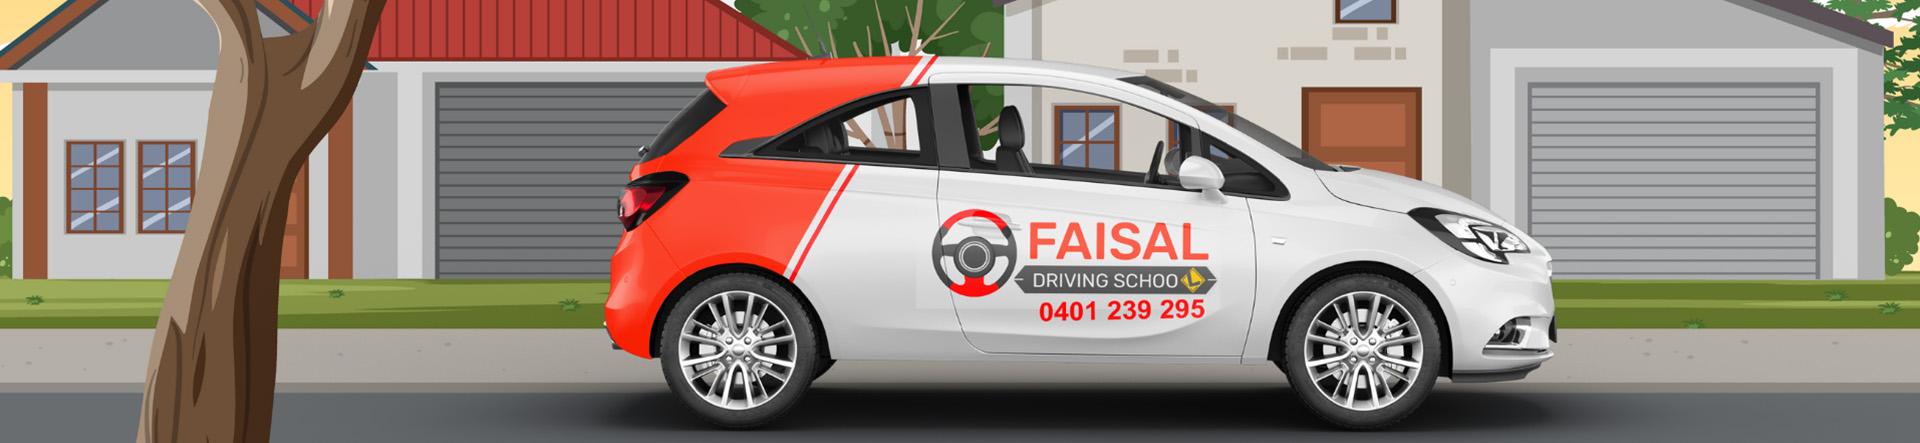 Faisal Driving School